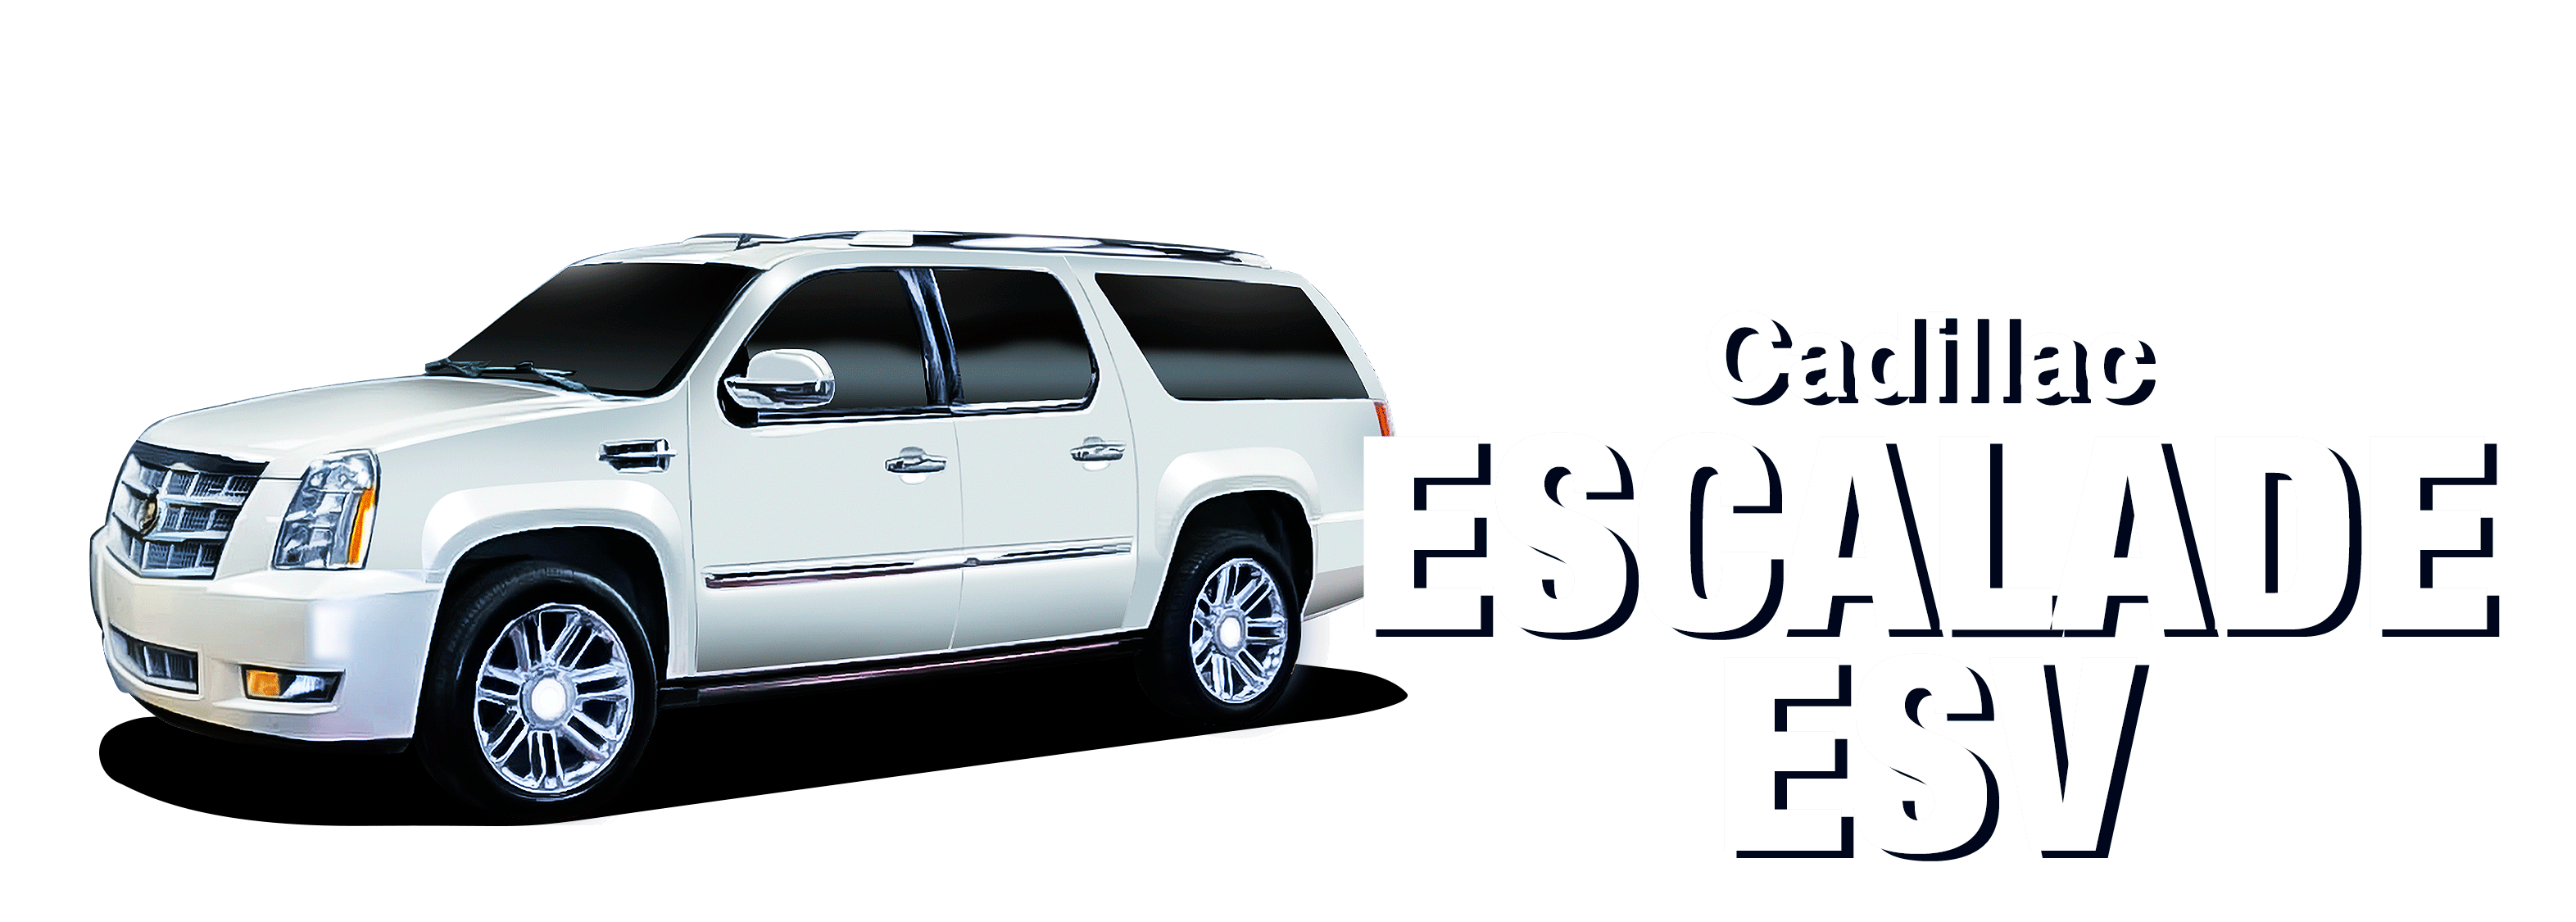 Cadillac-EscaladeESV-vehicle-desktop